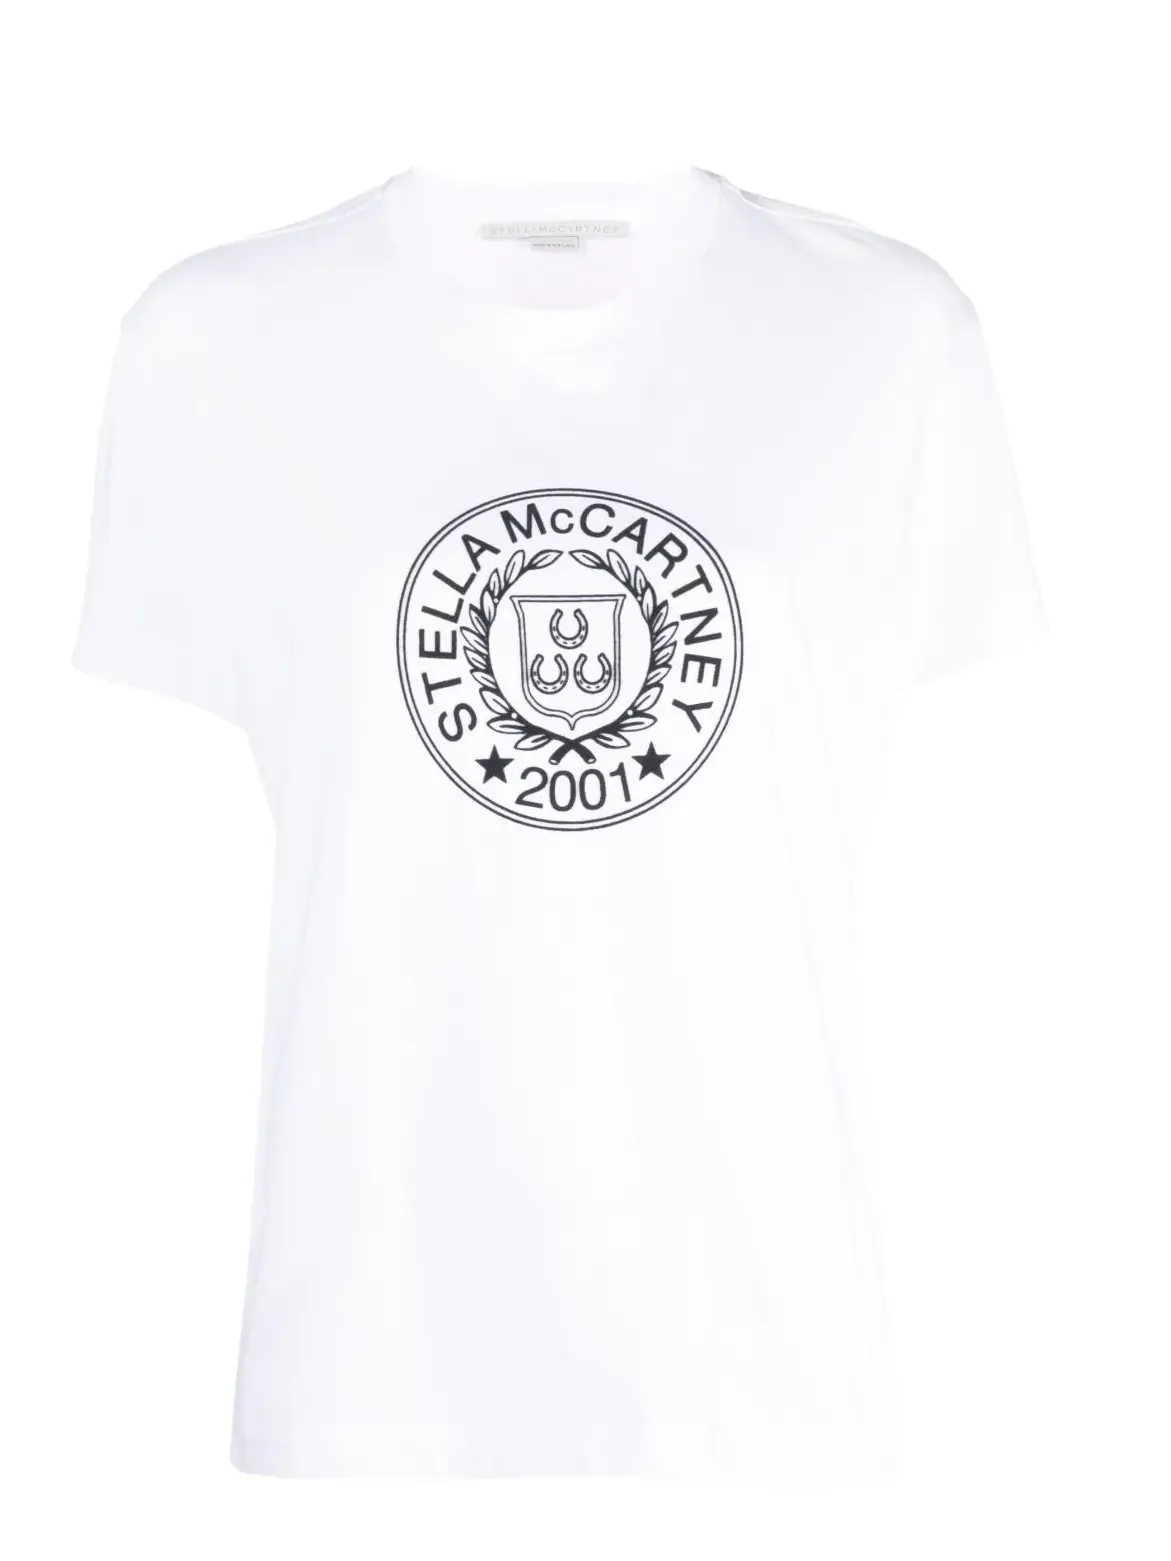 Stella McCartney: White logo t-shirt. Style 6J02413SPY35.